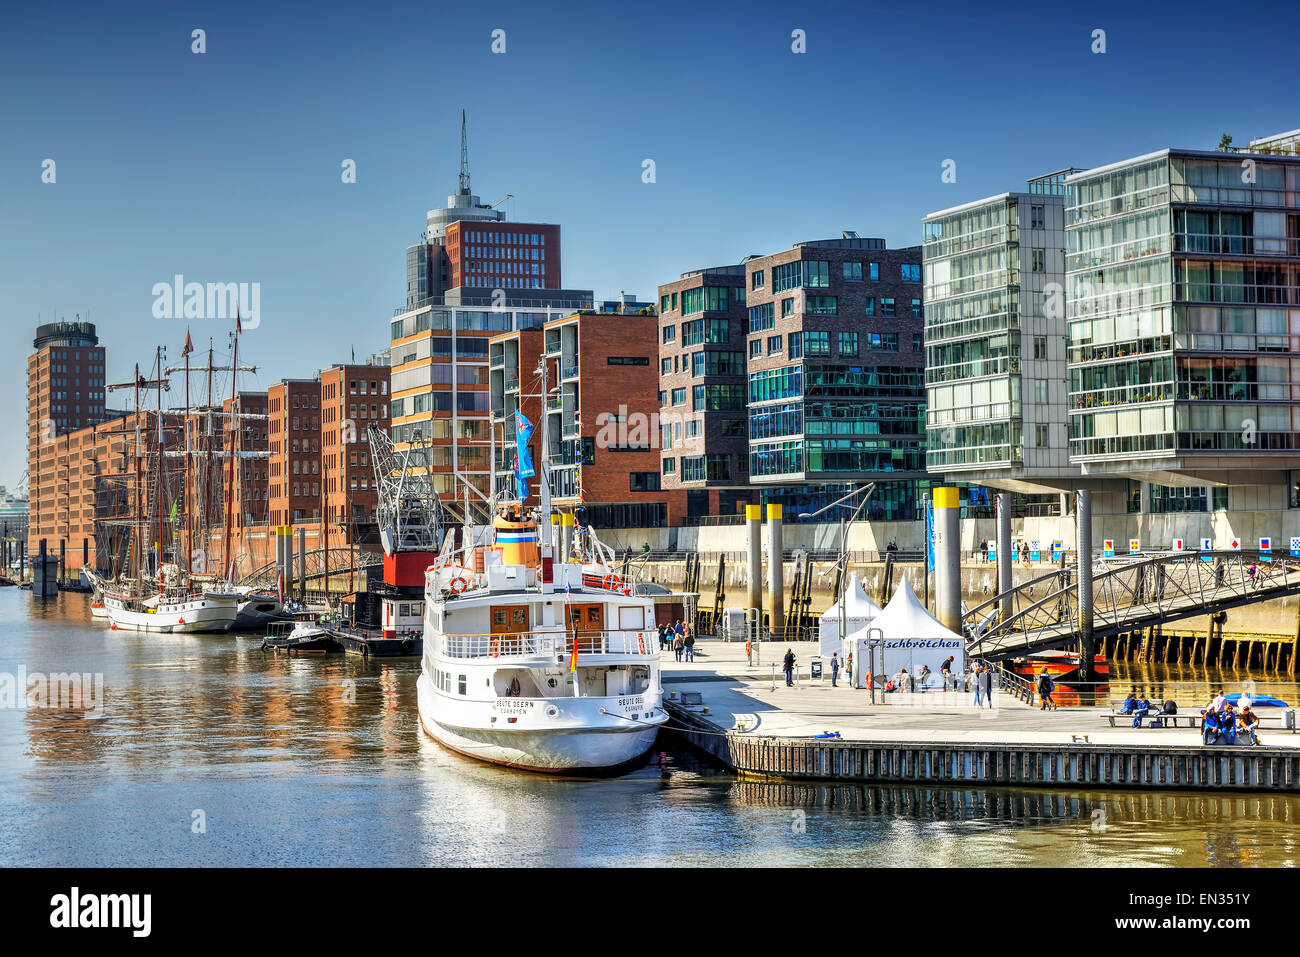 Sandtorhafen in HafenCity, Hamburg, Germany Stock Photo